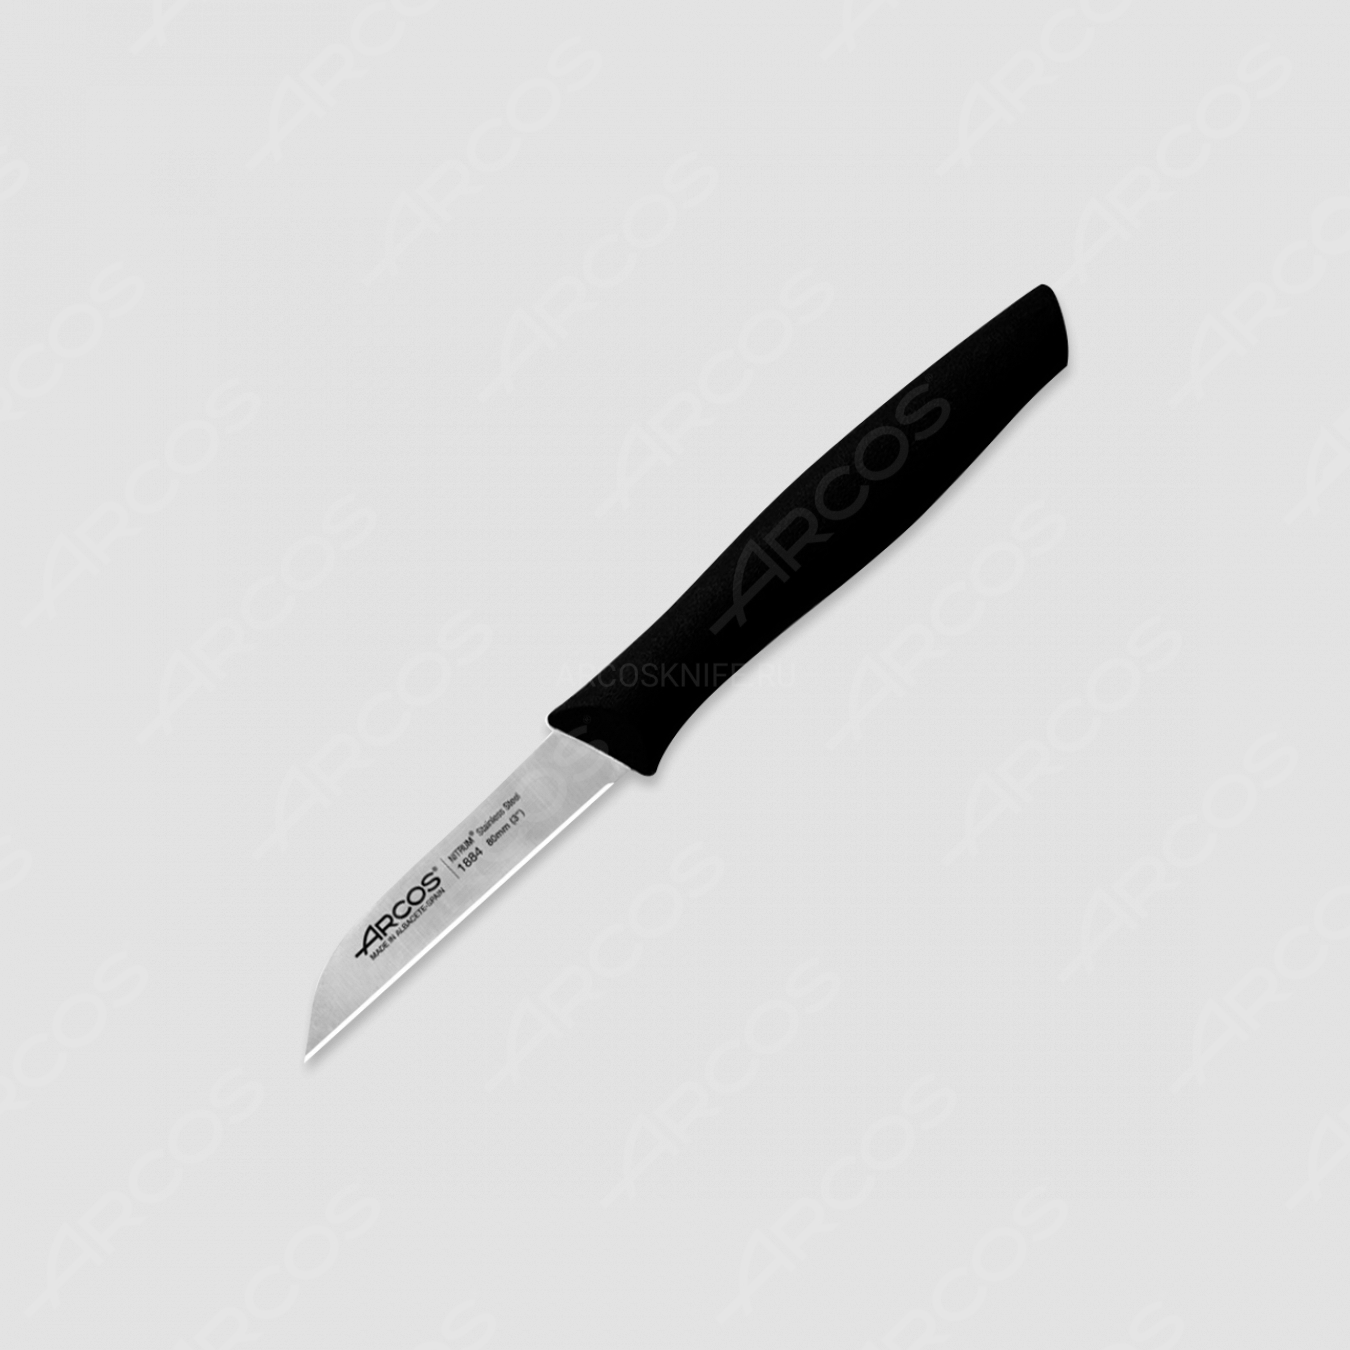 Нож кухонный для чистки 8 см, рукоять черная, серия Nova, ARCOS, Испания